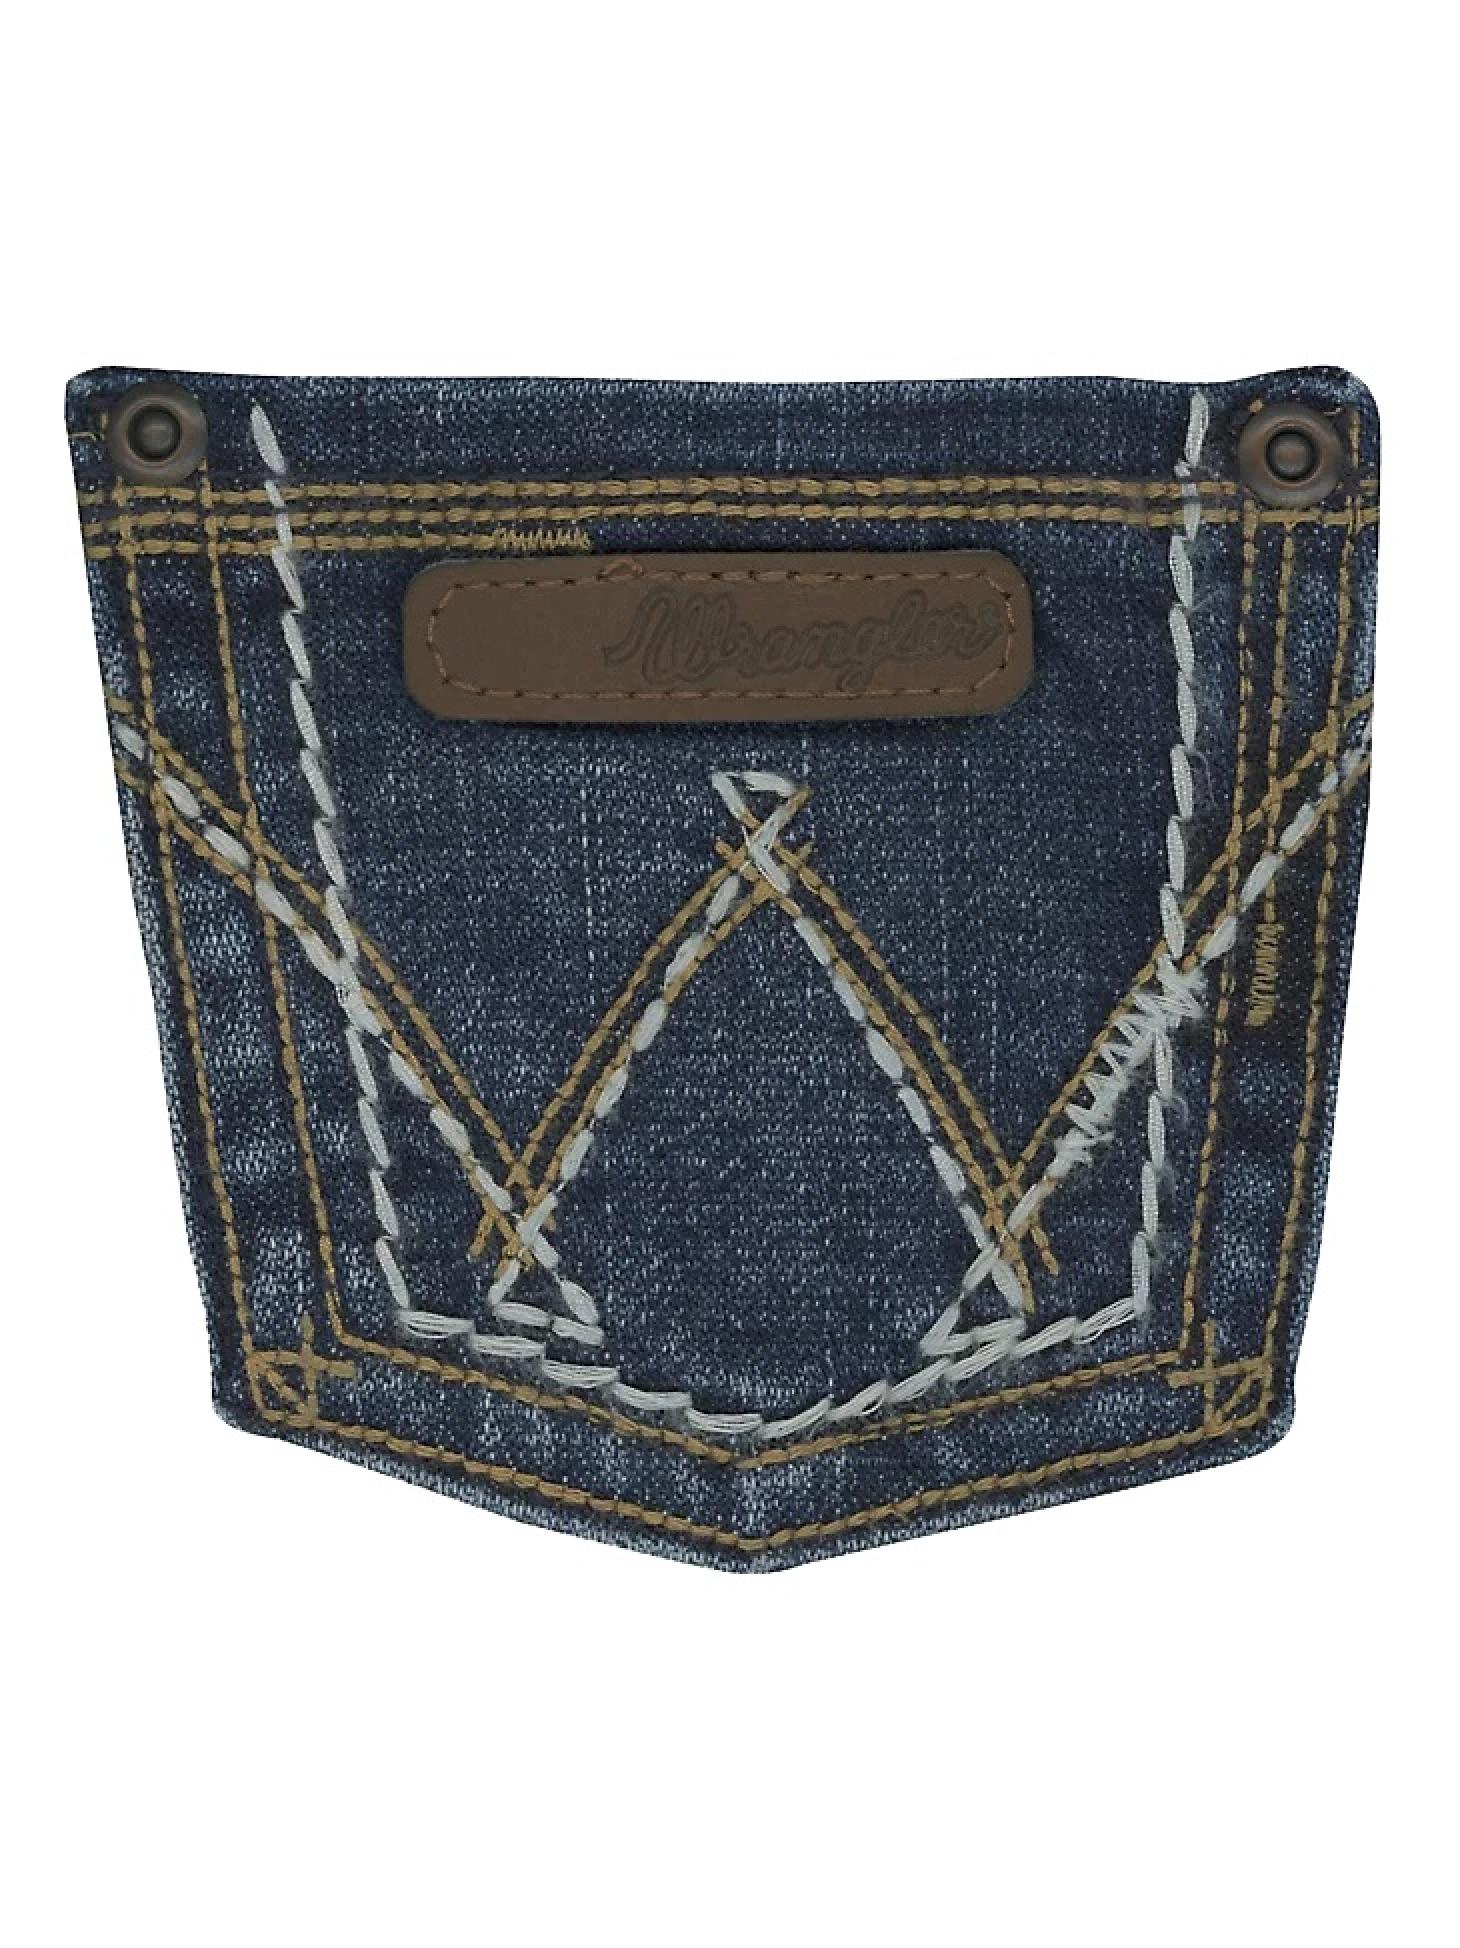 Wrangler Girl's Premium Patch Jean